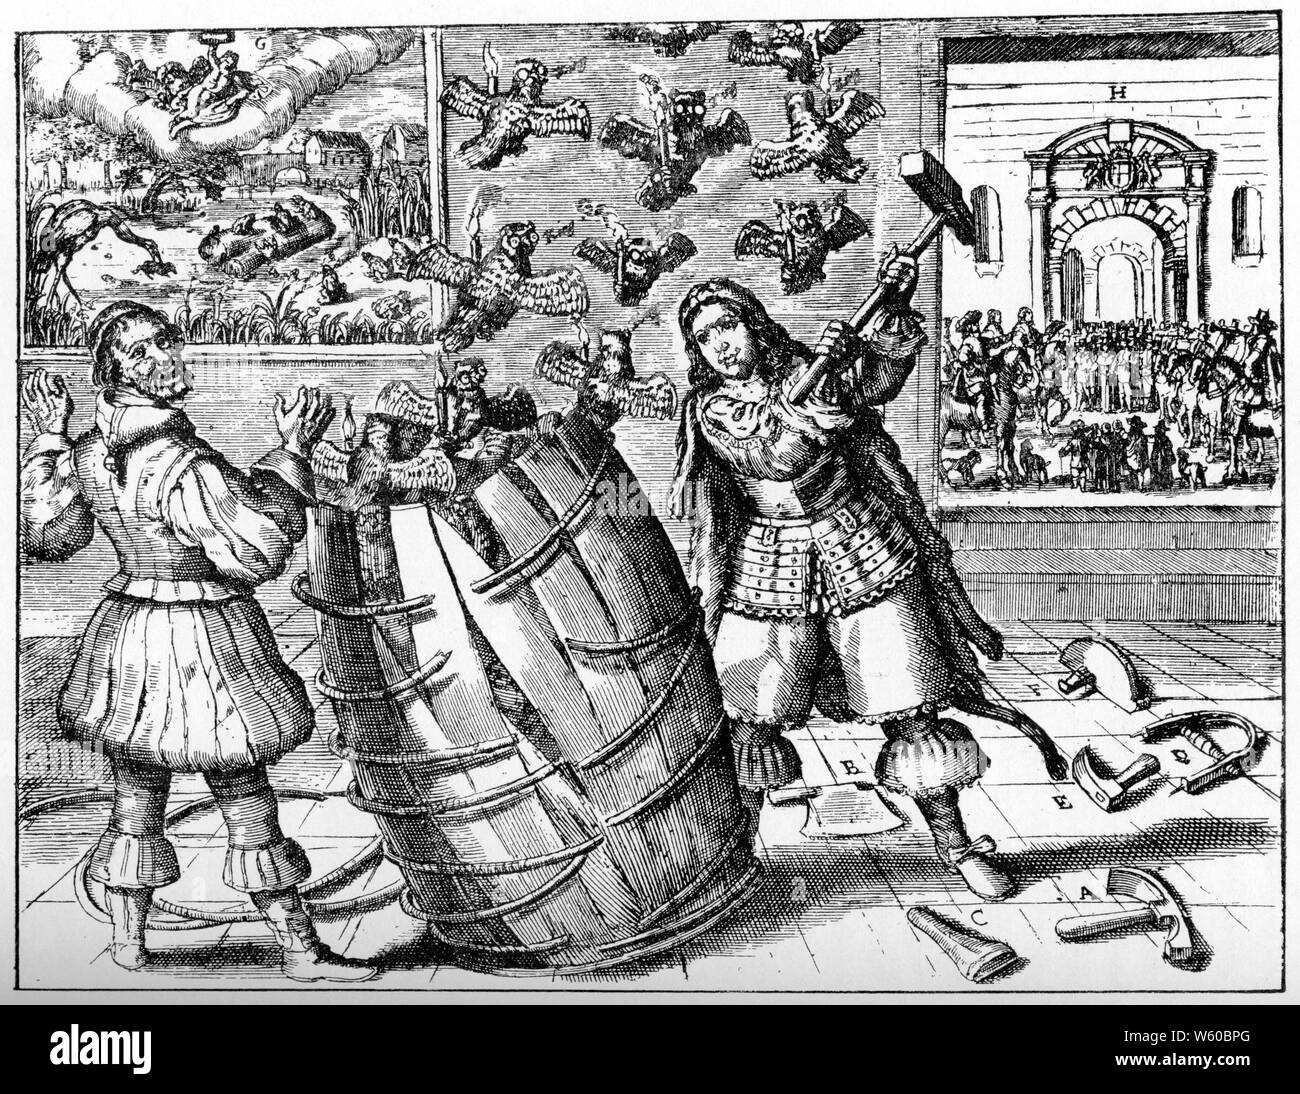 Ein niederländischer Breitseitiger, der Richard Cromwell, c1659, sättigt. Richard Cromwell (Mitte) wird als cooper gezeigt, der eine Löwenhaut trägt, mit Kupferwerkzeugen zu seinen Füßen und dabei mit einem Hammer ein Fass zerstört, aus dem bespeckte Eulen, die brennende Kerzen tragen, entkommen. Auf der linken Seite eine Figur des Pickleherings, des Clowns, der seine Arme hebt; im Hintergrund zwei Bilder, links die Aesops Fabel "die Frösche und König Stork" zeigen, auf der rechten Seite eine Staatsproklamation, die in einem Innenhof mit den Armen des Commonwealth über einem Bogen stattfindet. Stockfoto